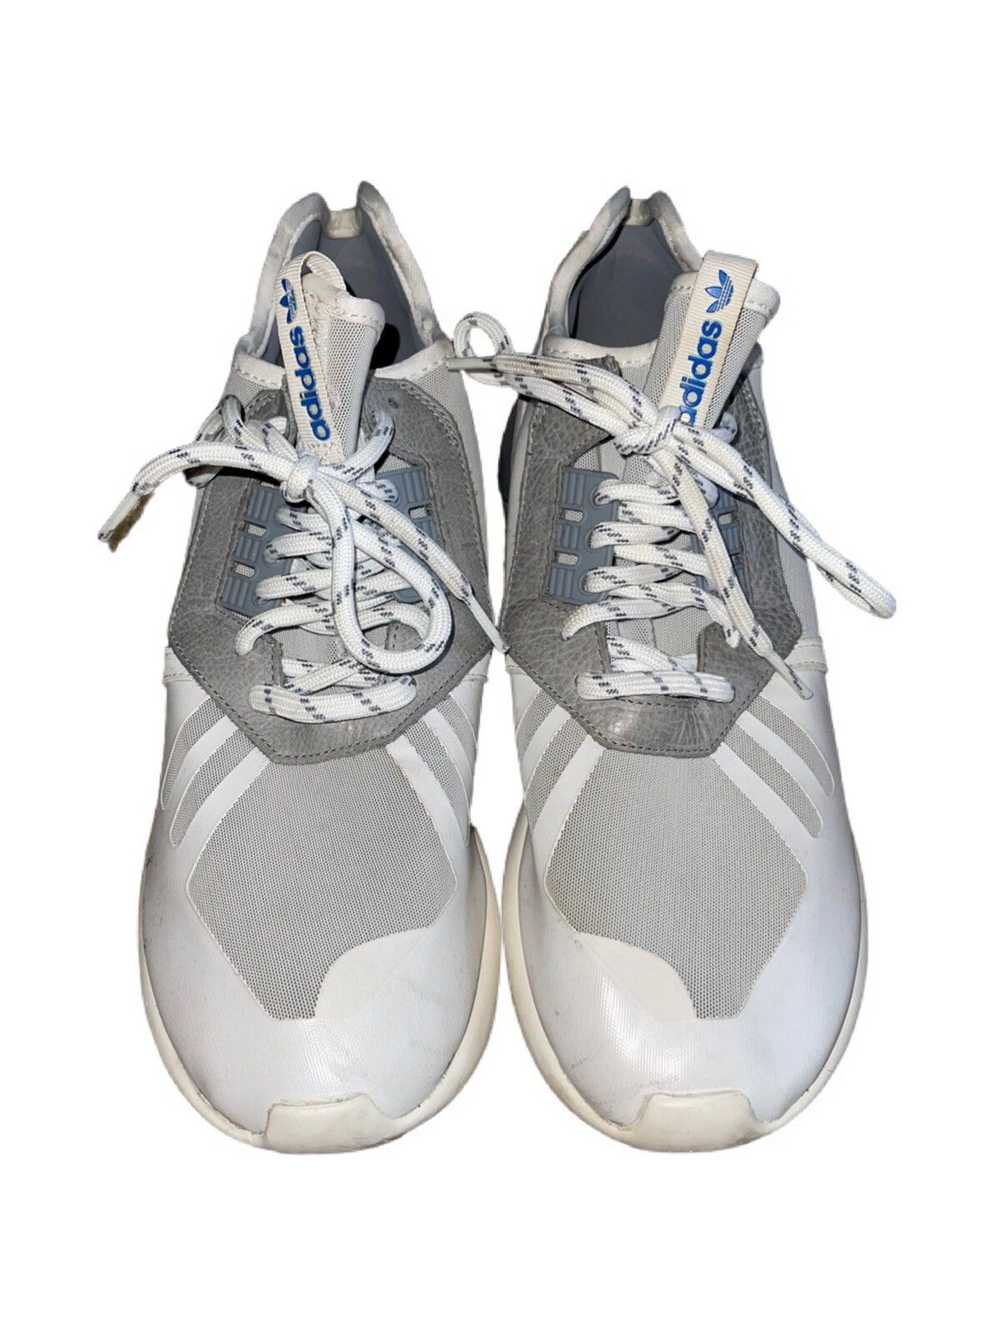 Adidas Adidas Tubular Shoes - image 2